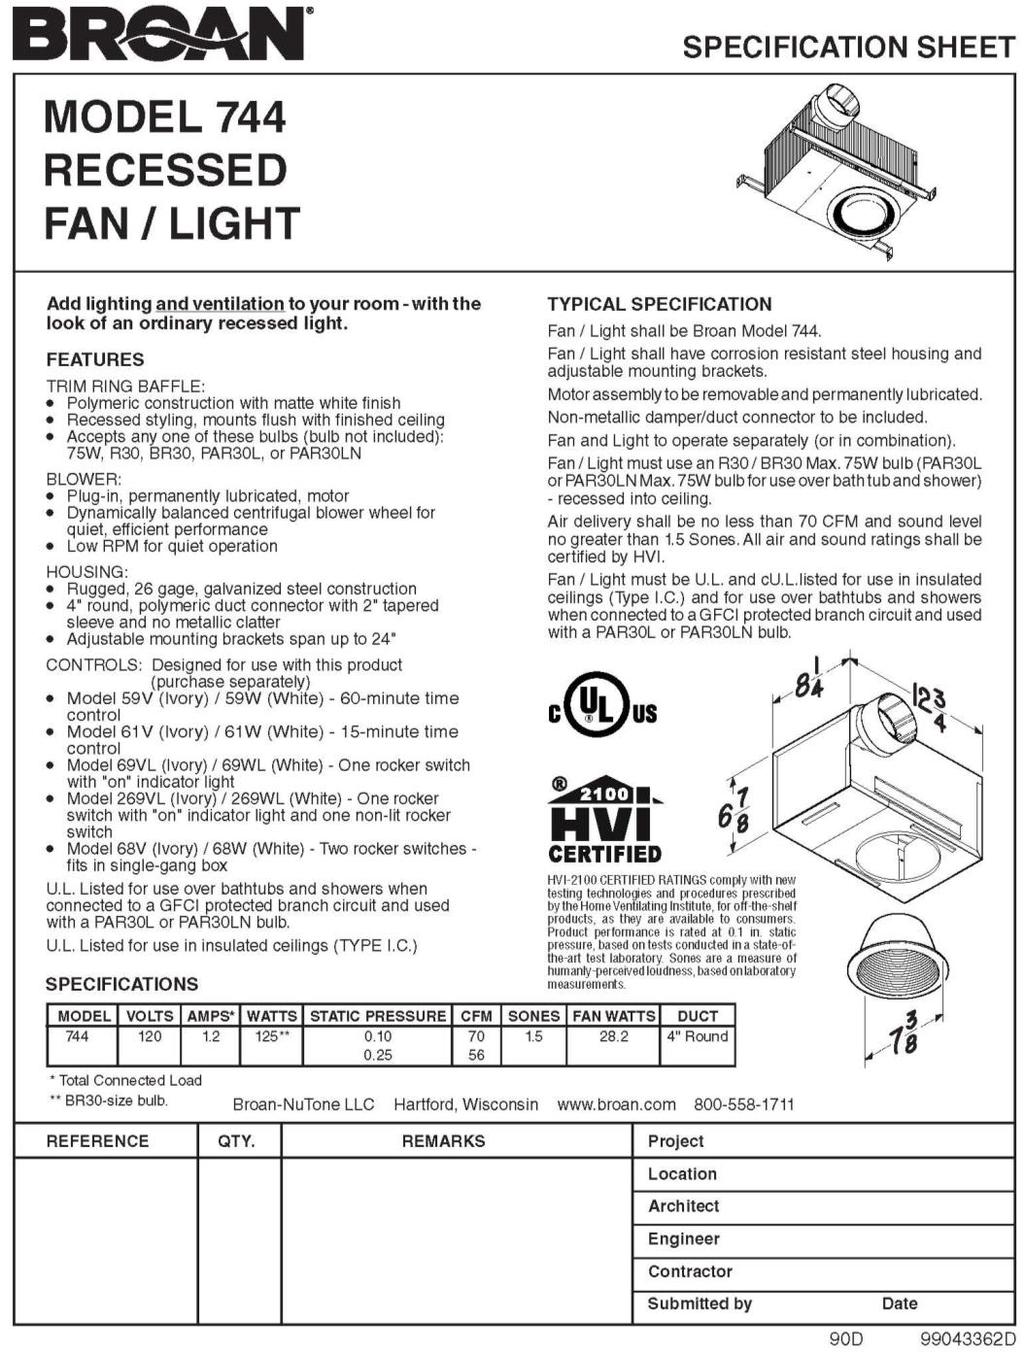 Fan/Light Model